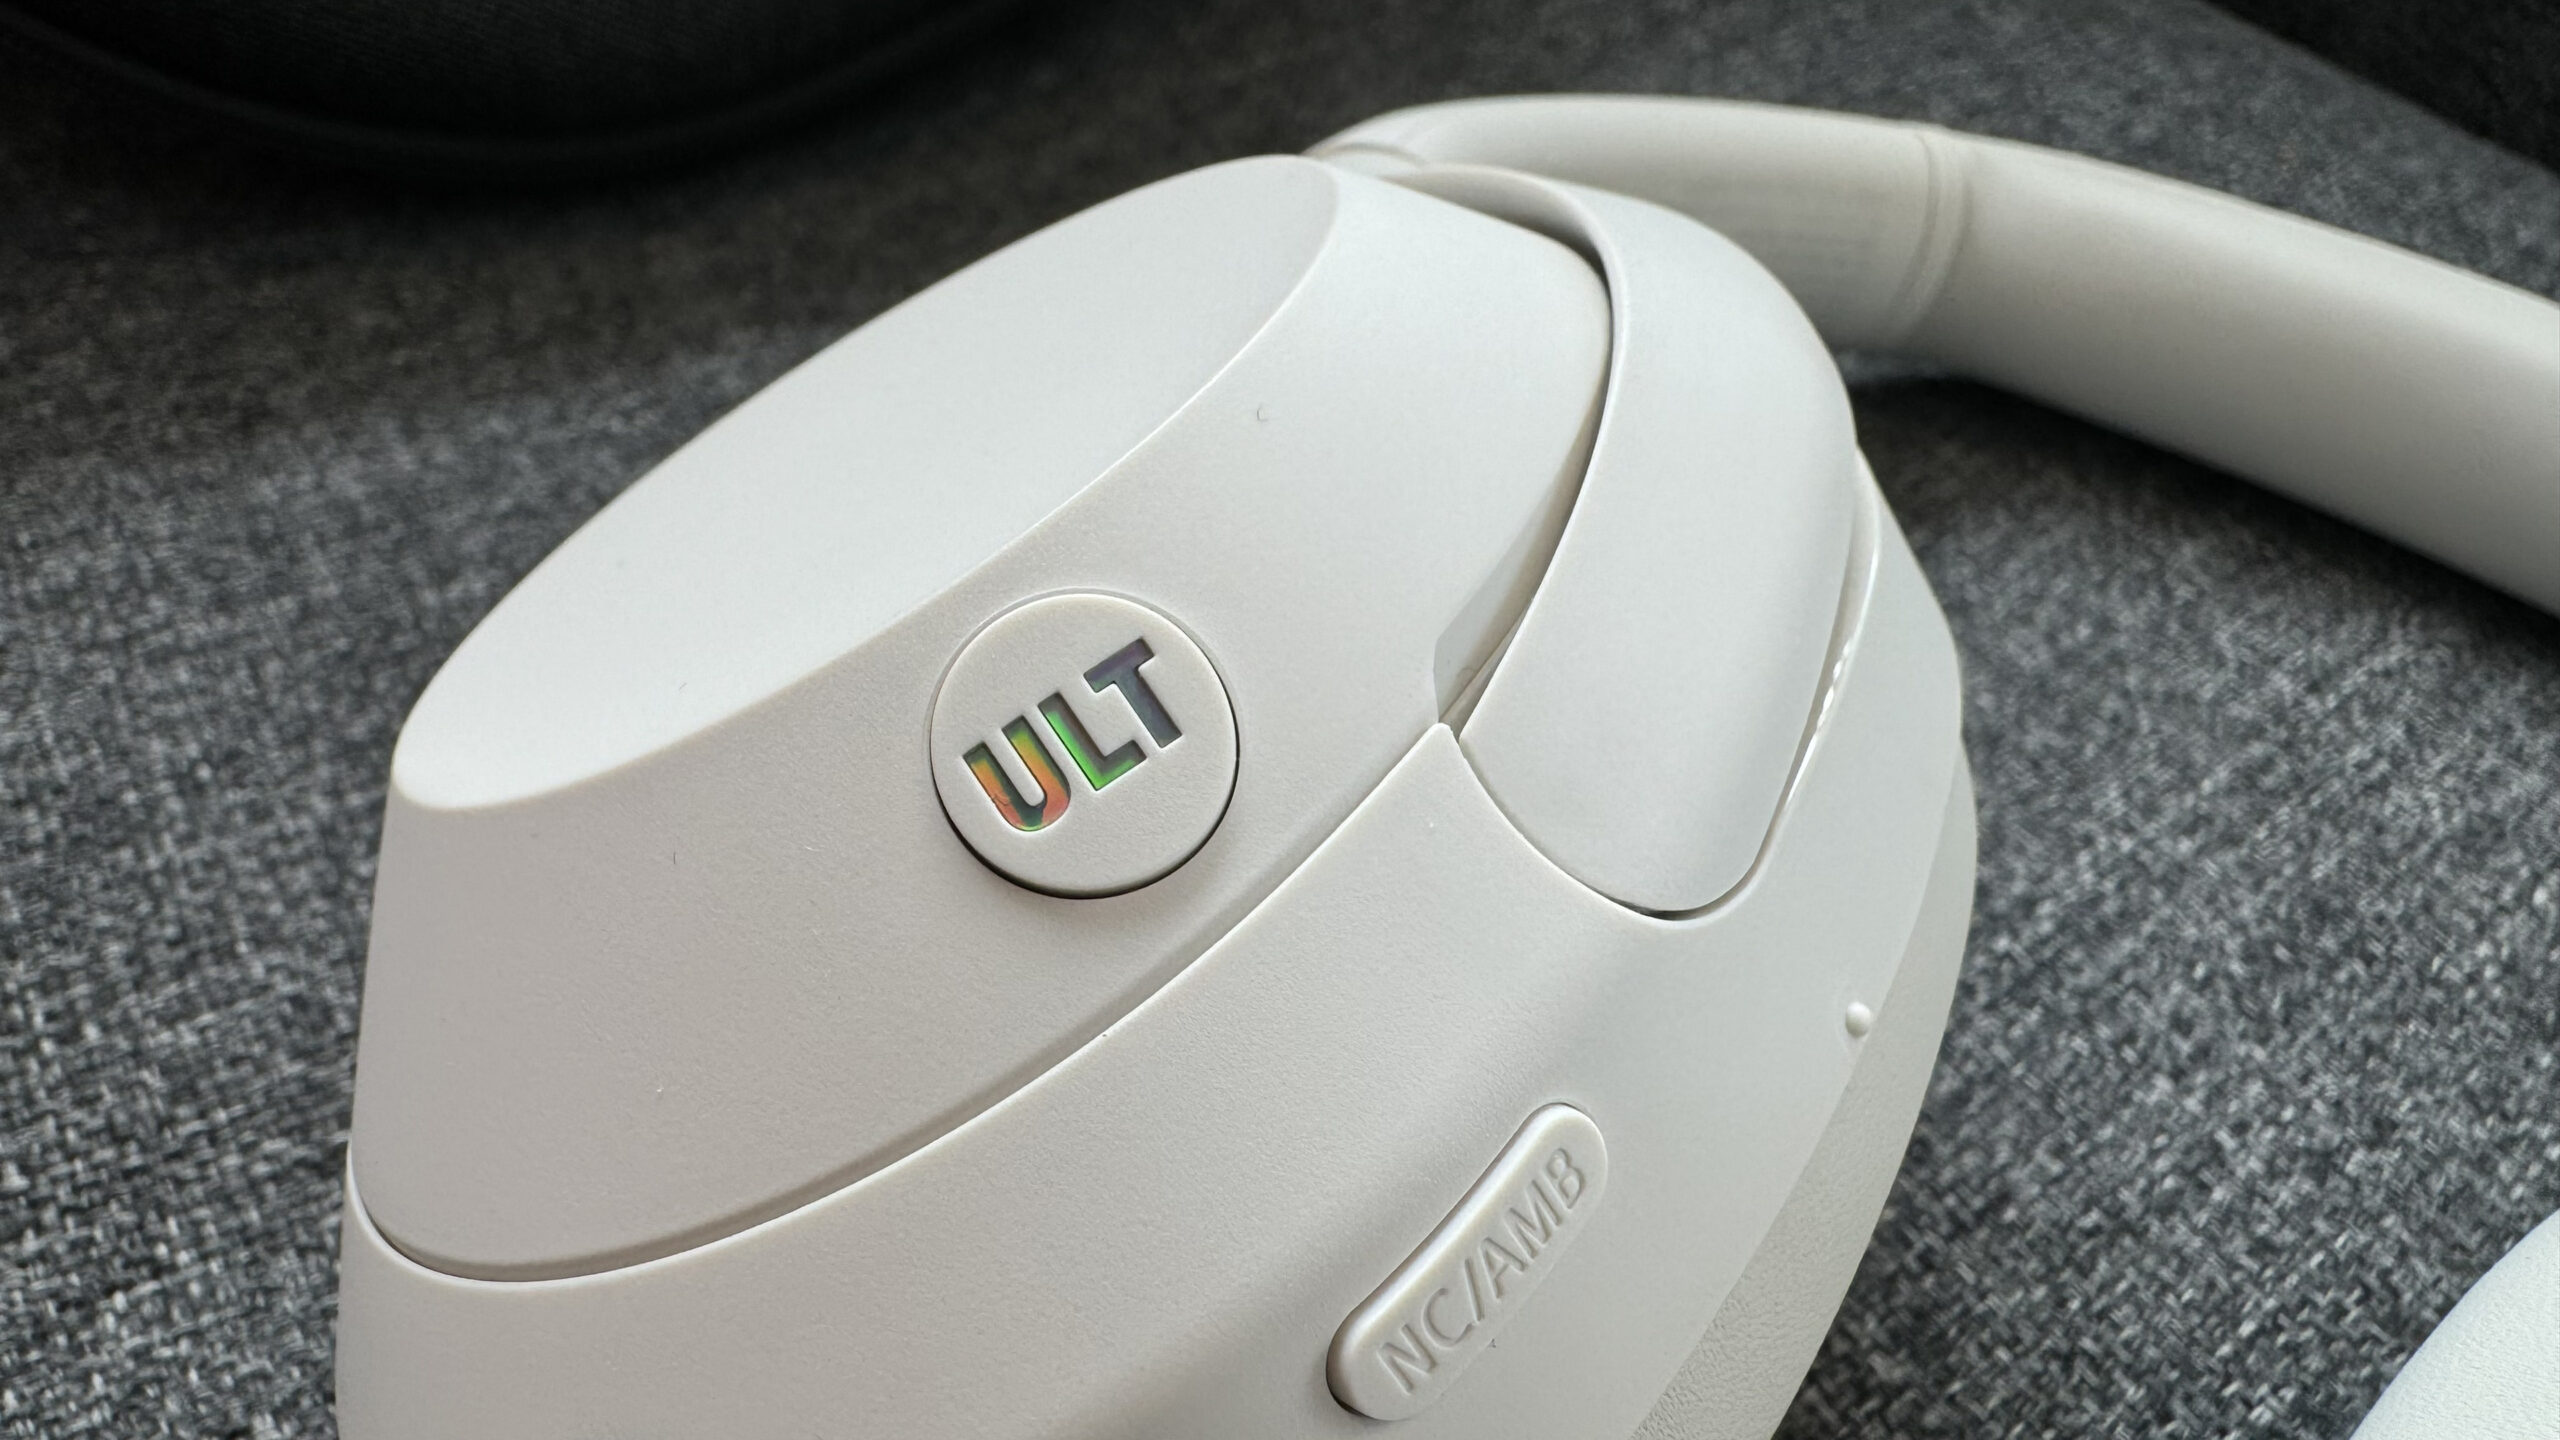 Sony ULT Wear - ULT button - GeirNordby